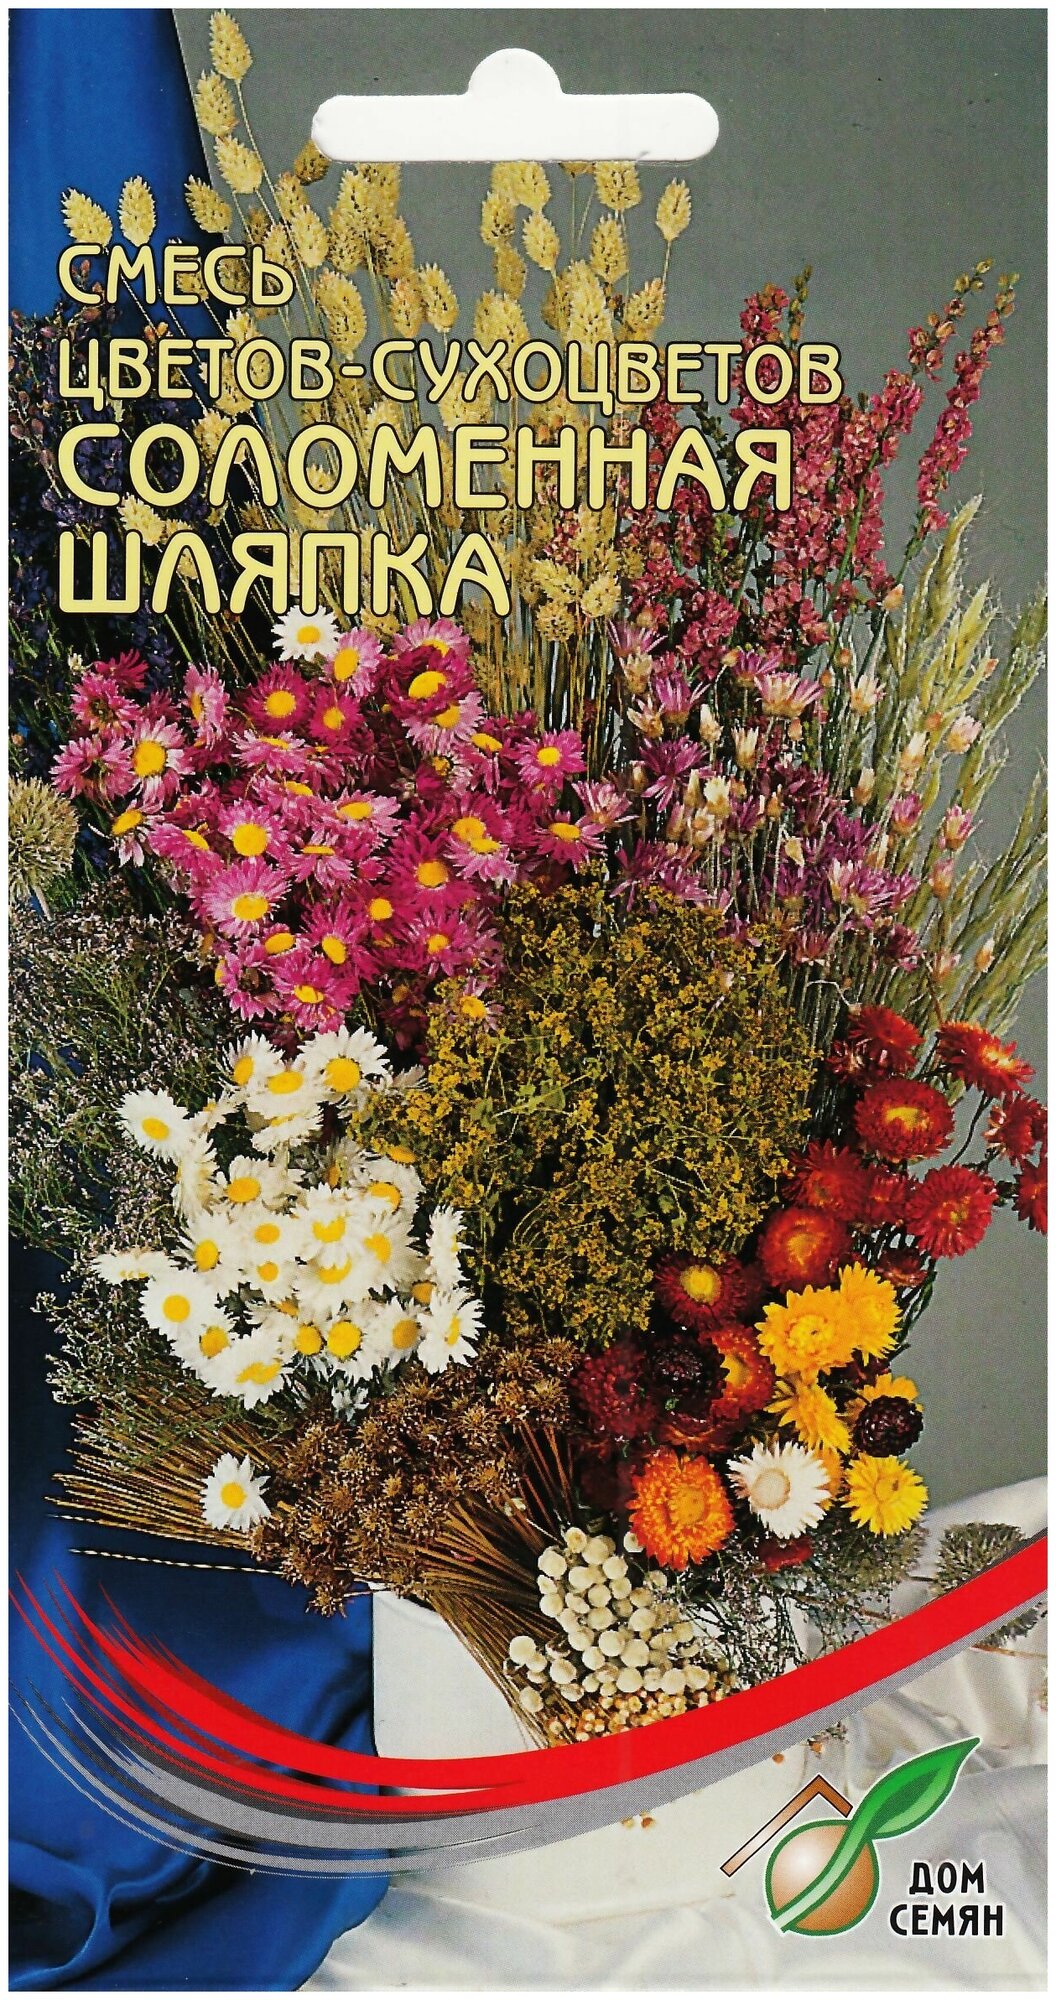 Смесь цветов-сухоцветов Соломенная Шляпка 5 гр семян